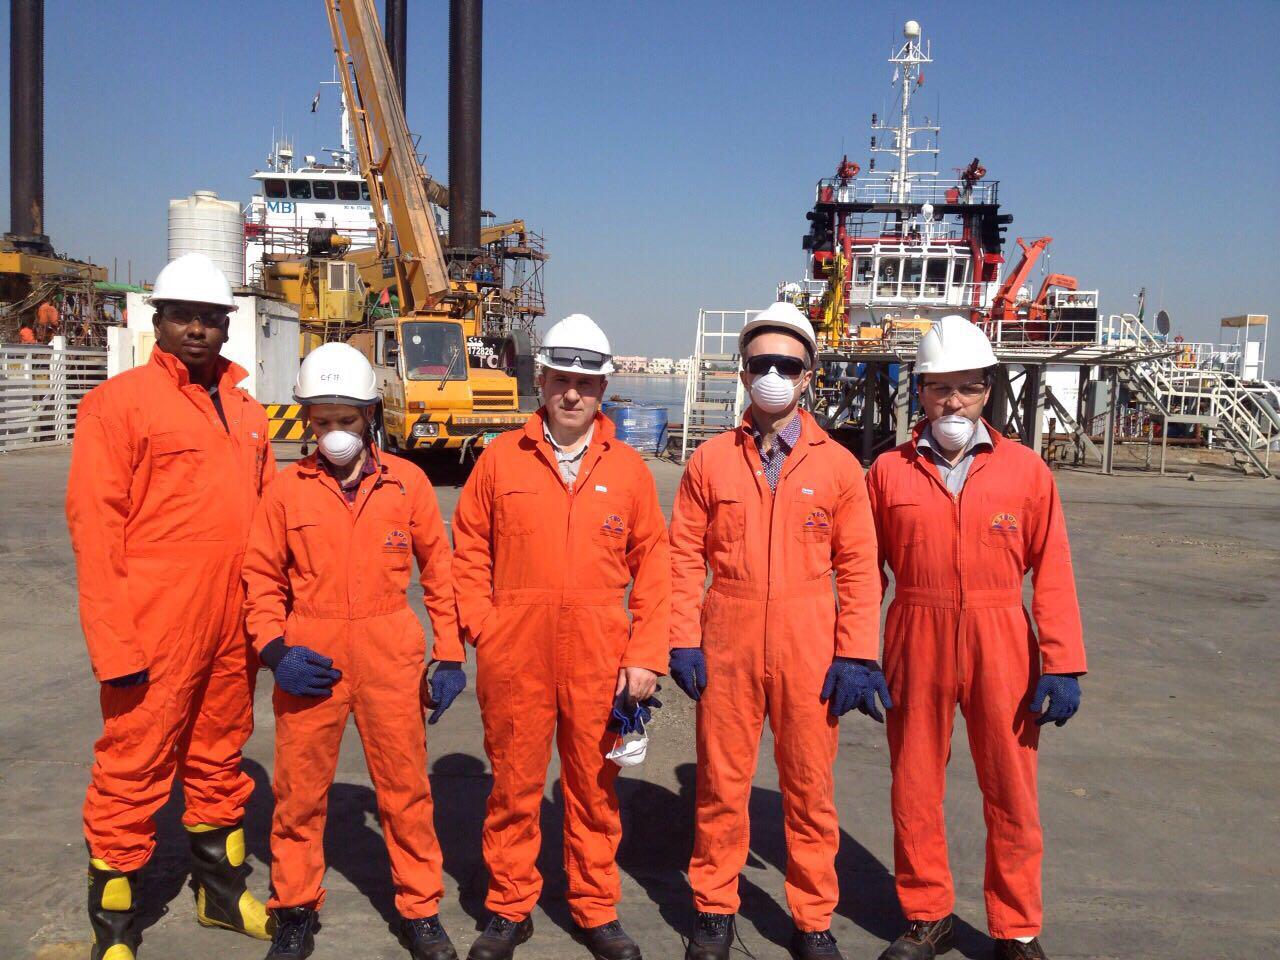 Посещение тренинга по промышленной безопасности и охране труда сотрудниками компании в г. Дубай, ОАЭ